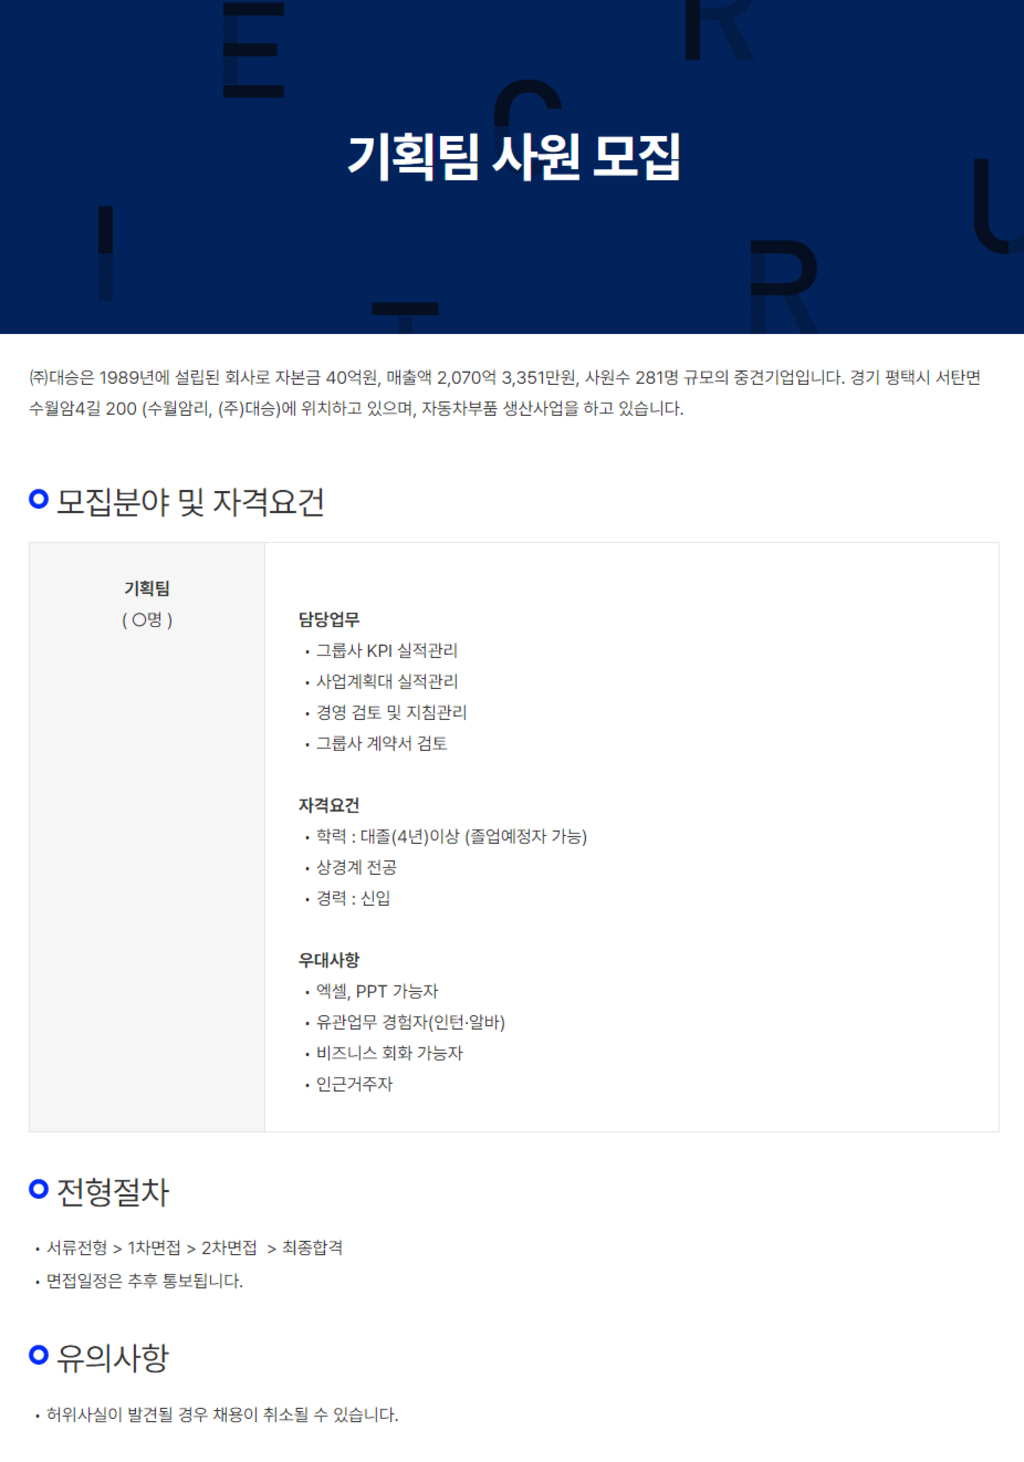 [대승] 기획팀 신입사원 채용